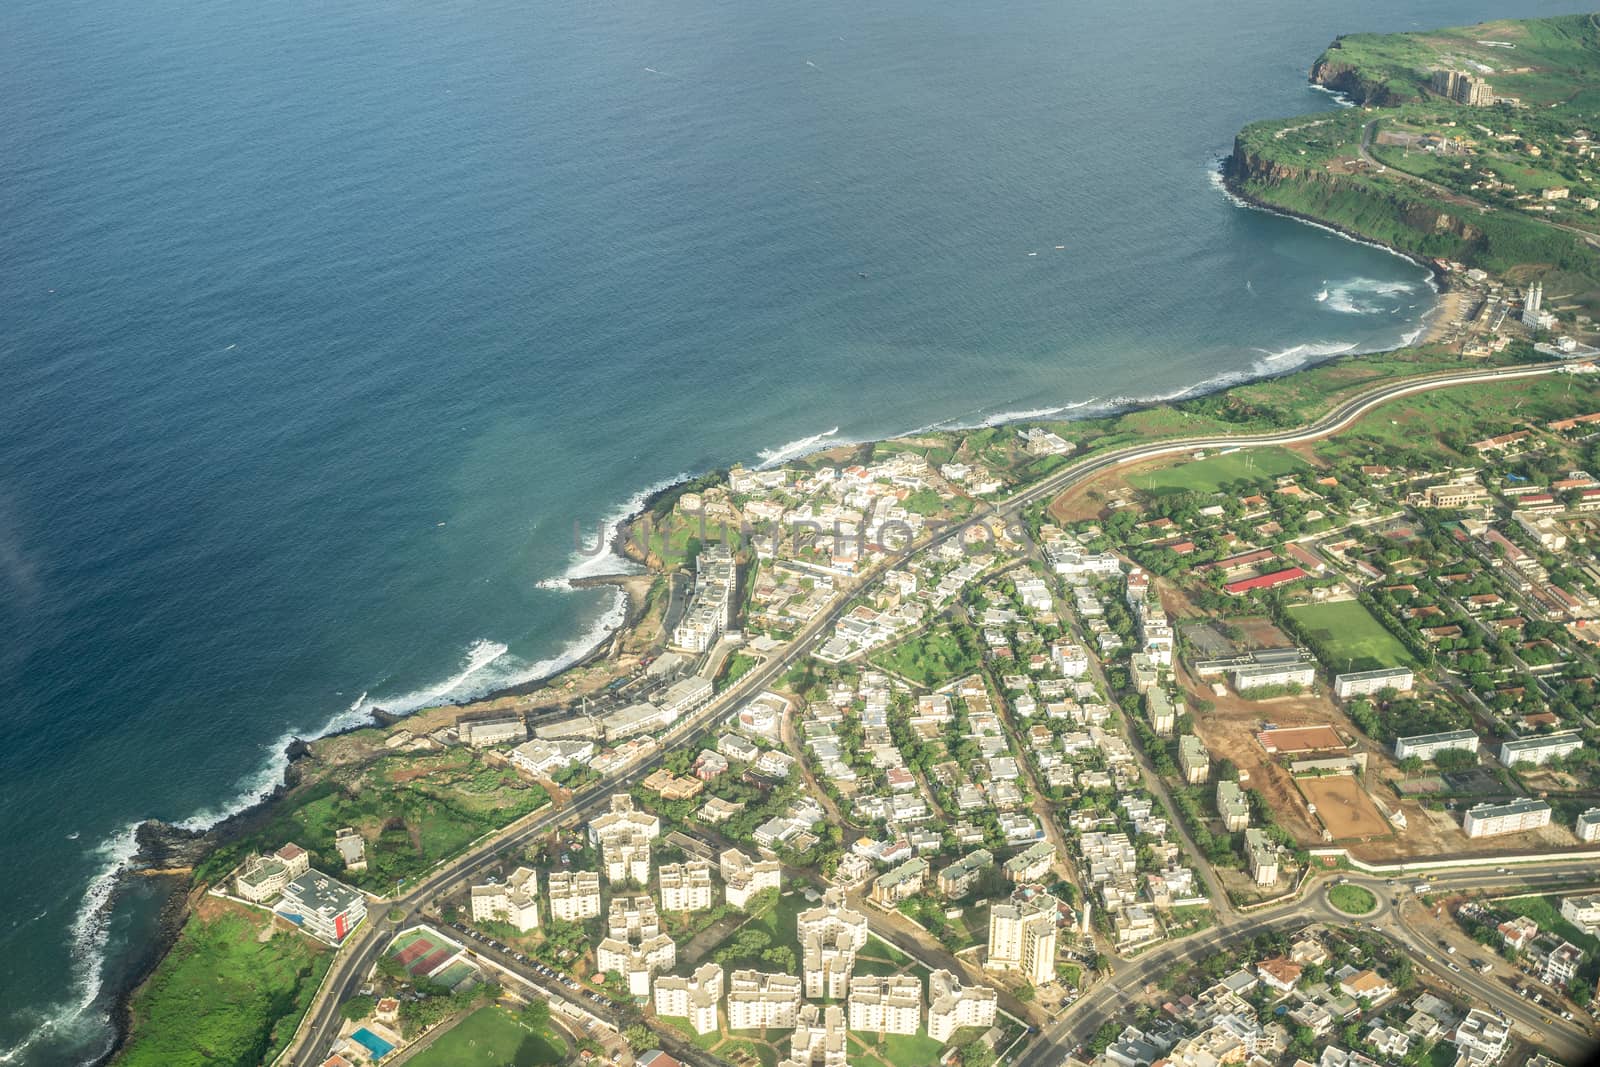 Aerial view of the Capital city of Dakar, Senegal along the Atlantic Ocean Coast